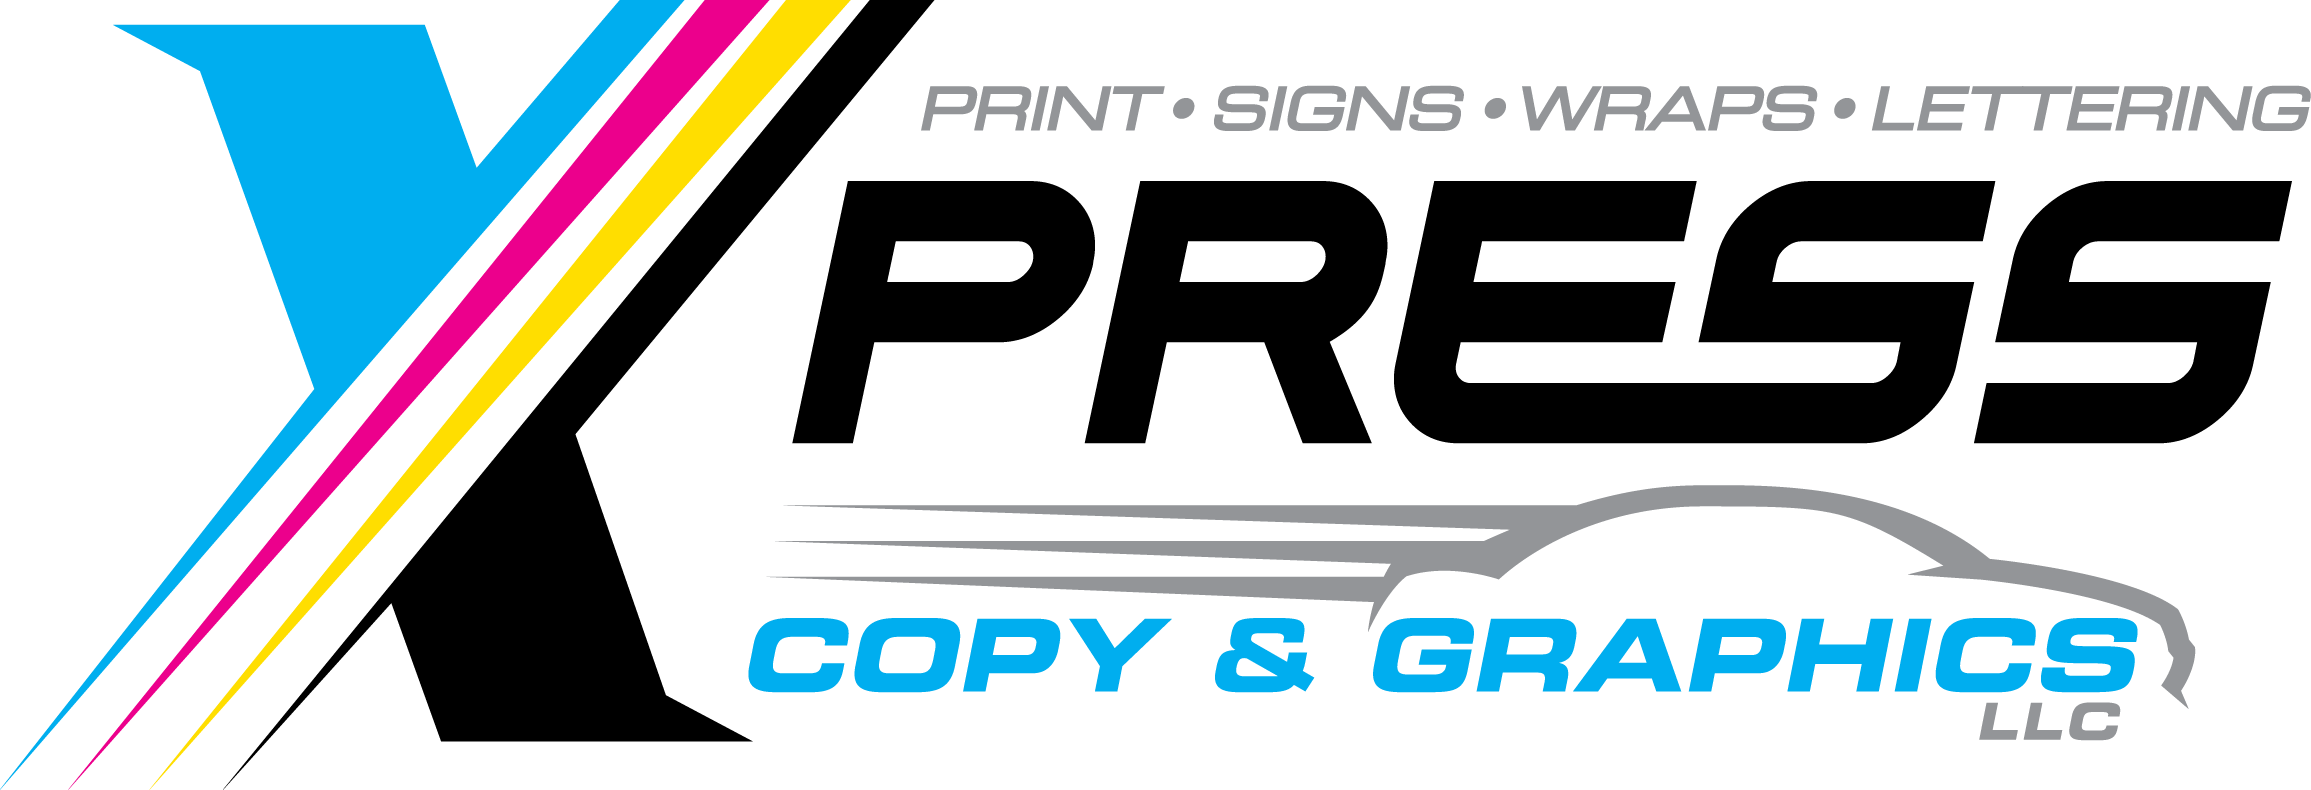 Xpress Copy And Graphics, Culpeper, VA 's Logo